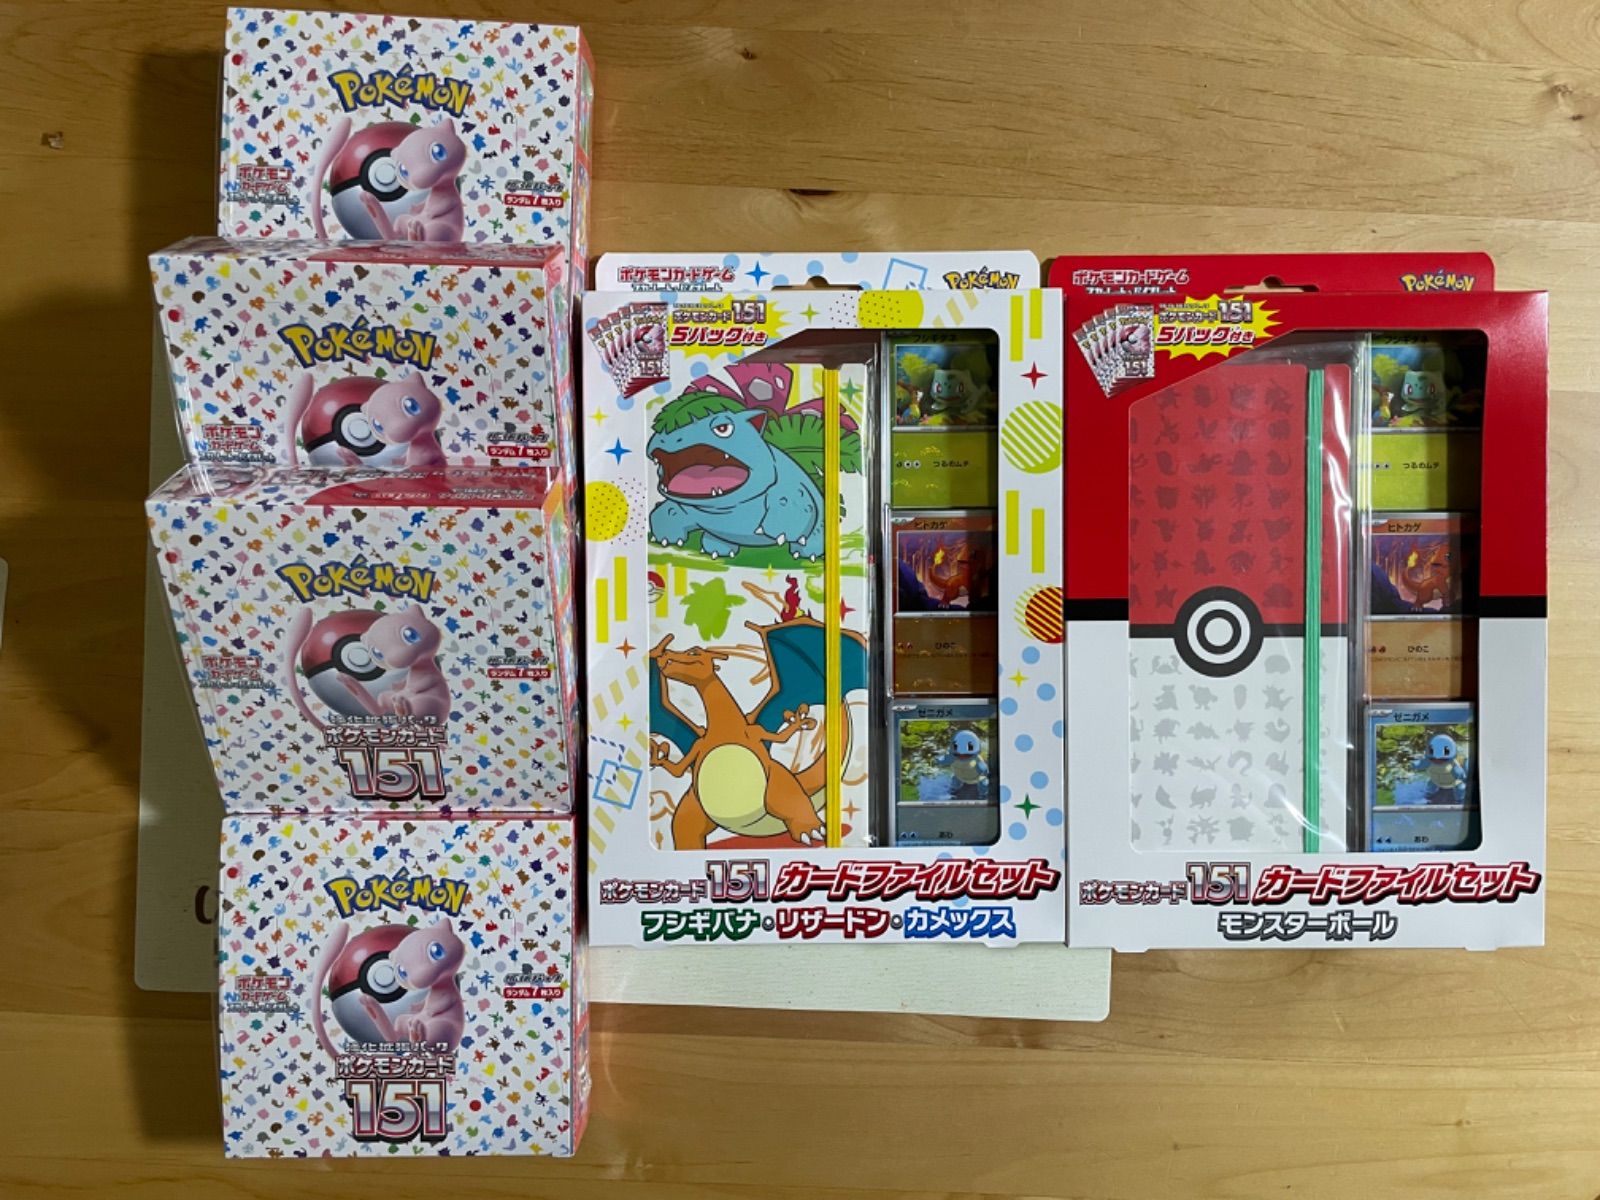 ポケモンカードゲーム ポケモンカード151 4BOX + カードファイルセット 